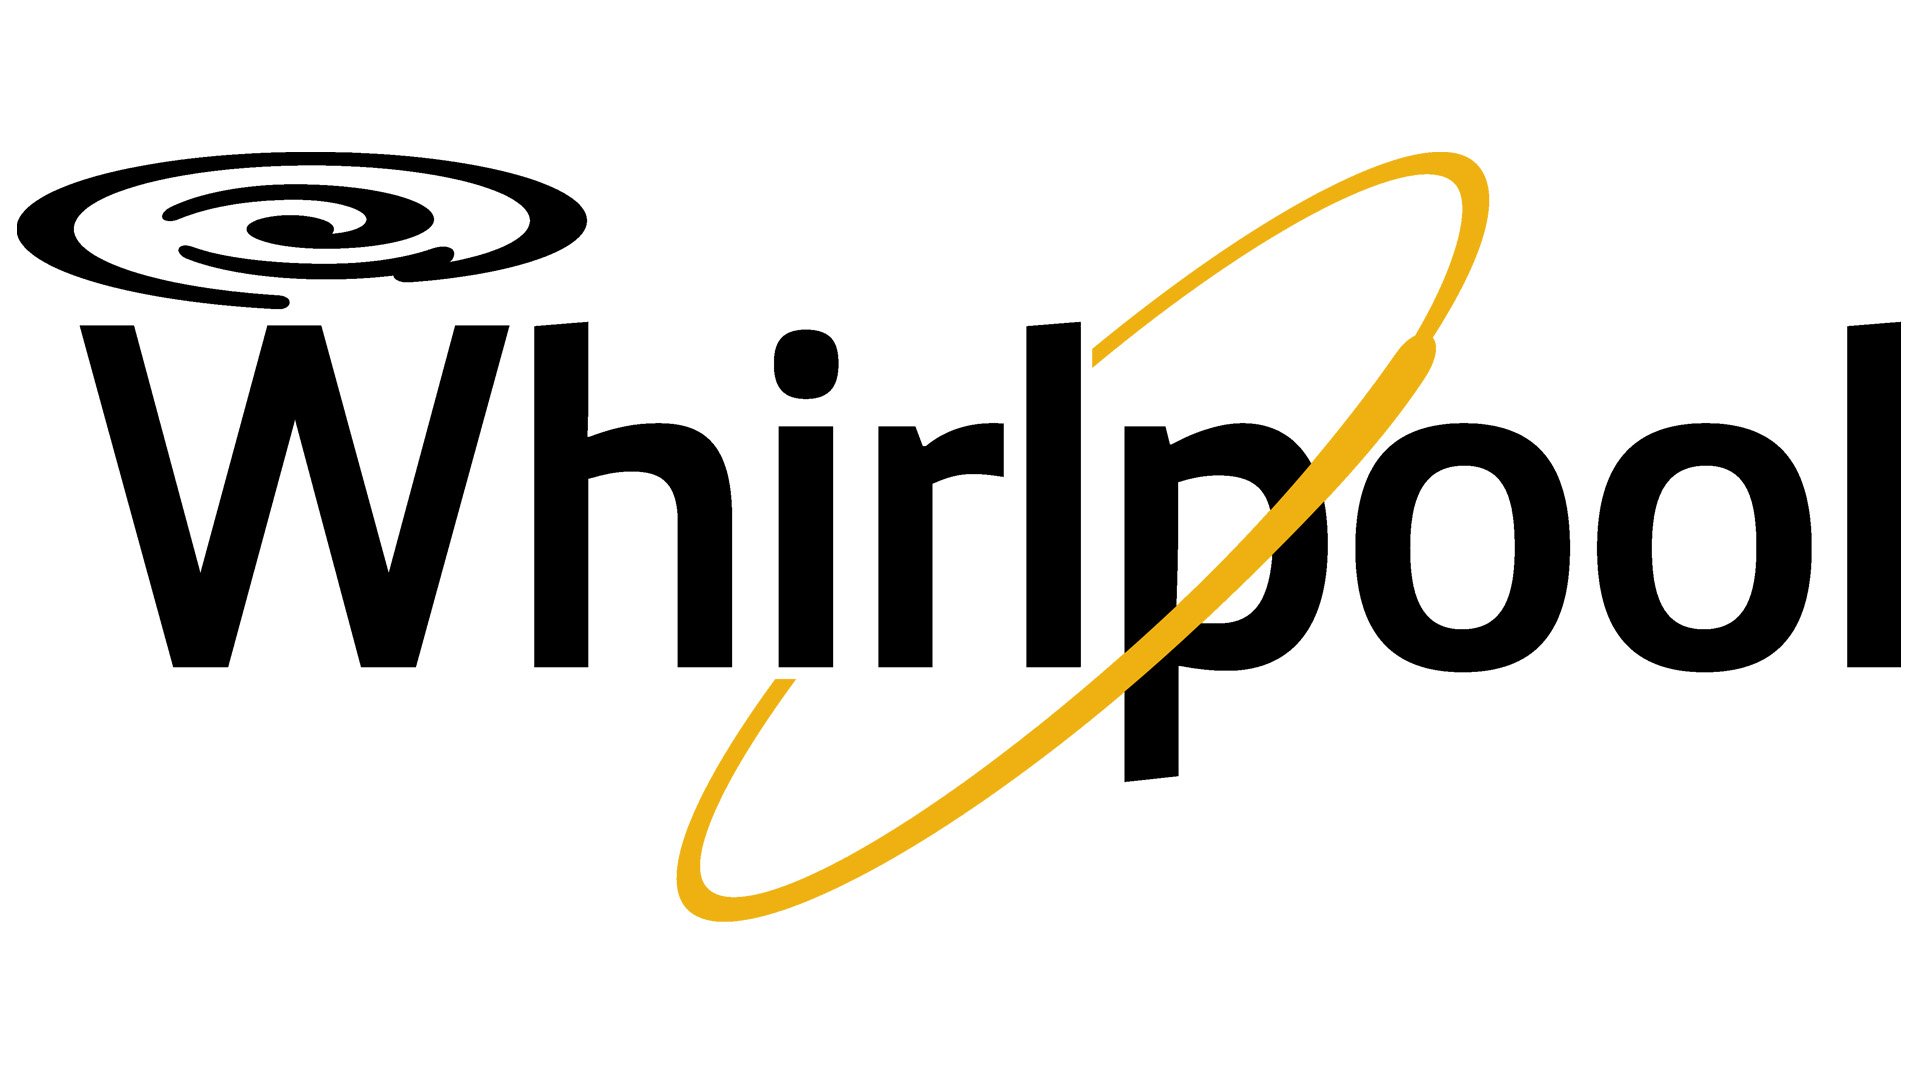 Logo redesign für luxus whirlpool-hersteller | Logo design contest |  99designs